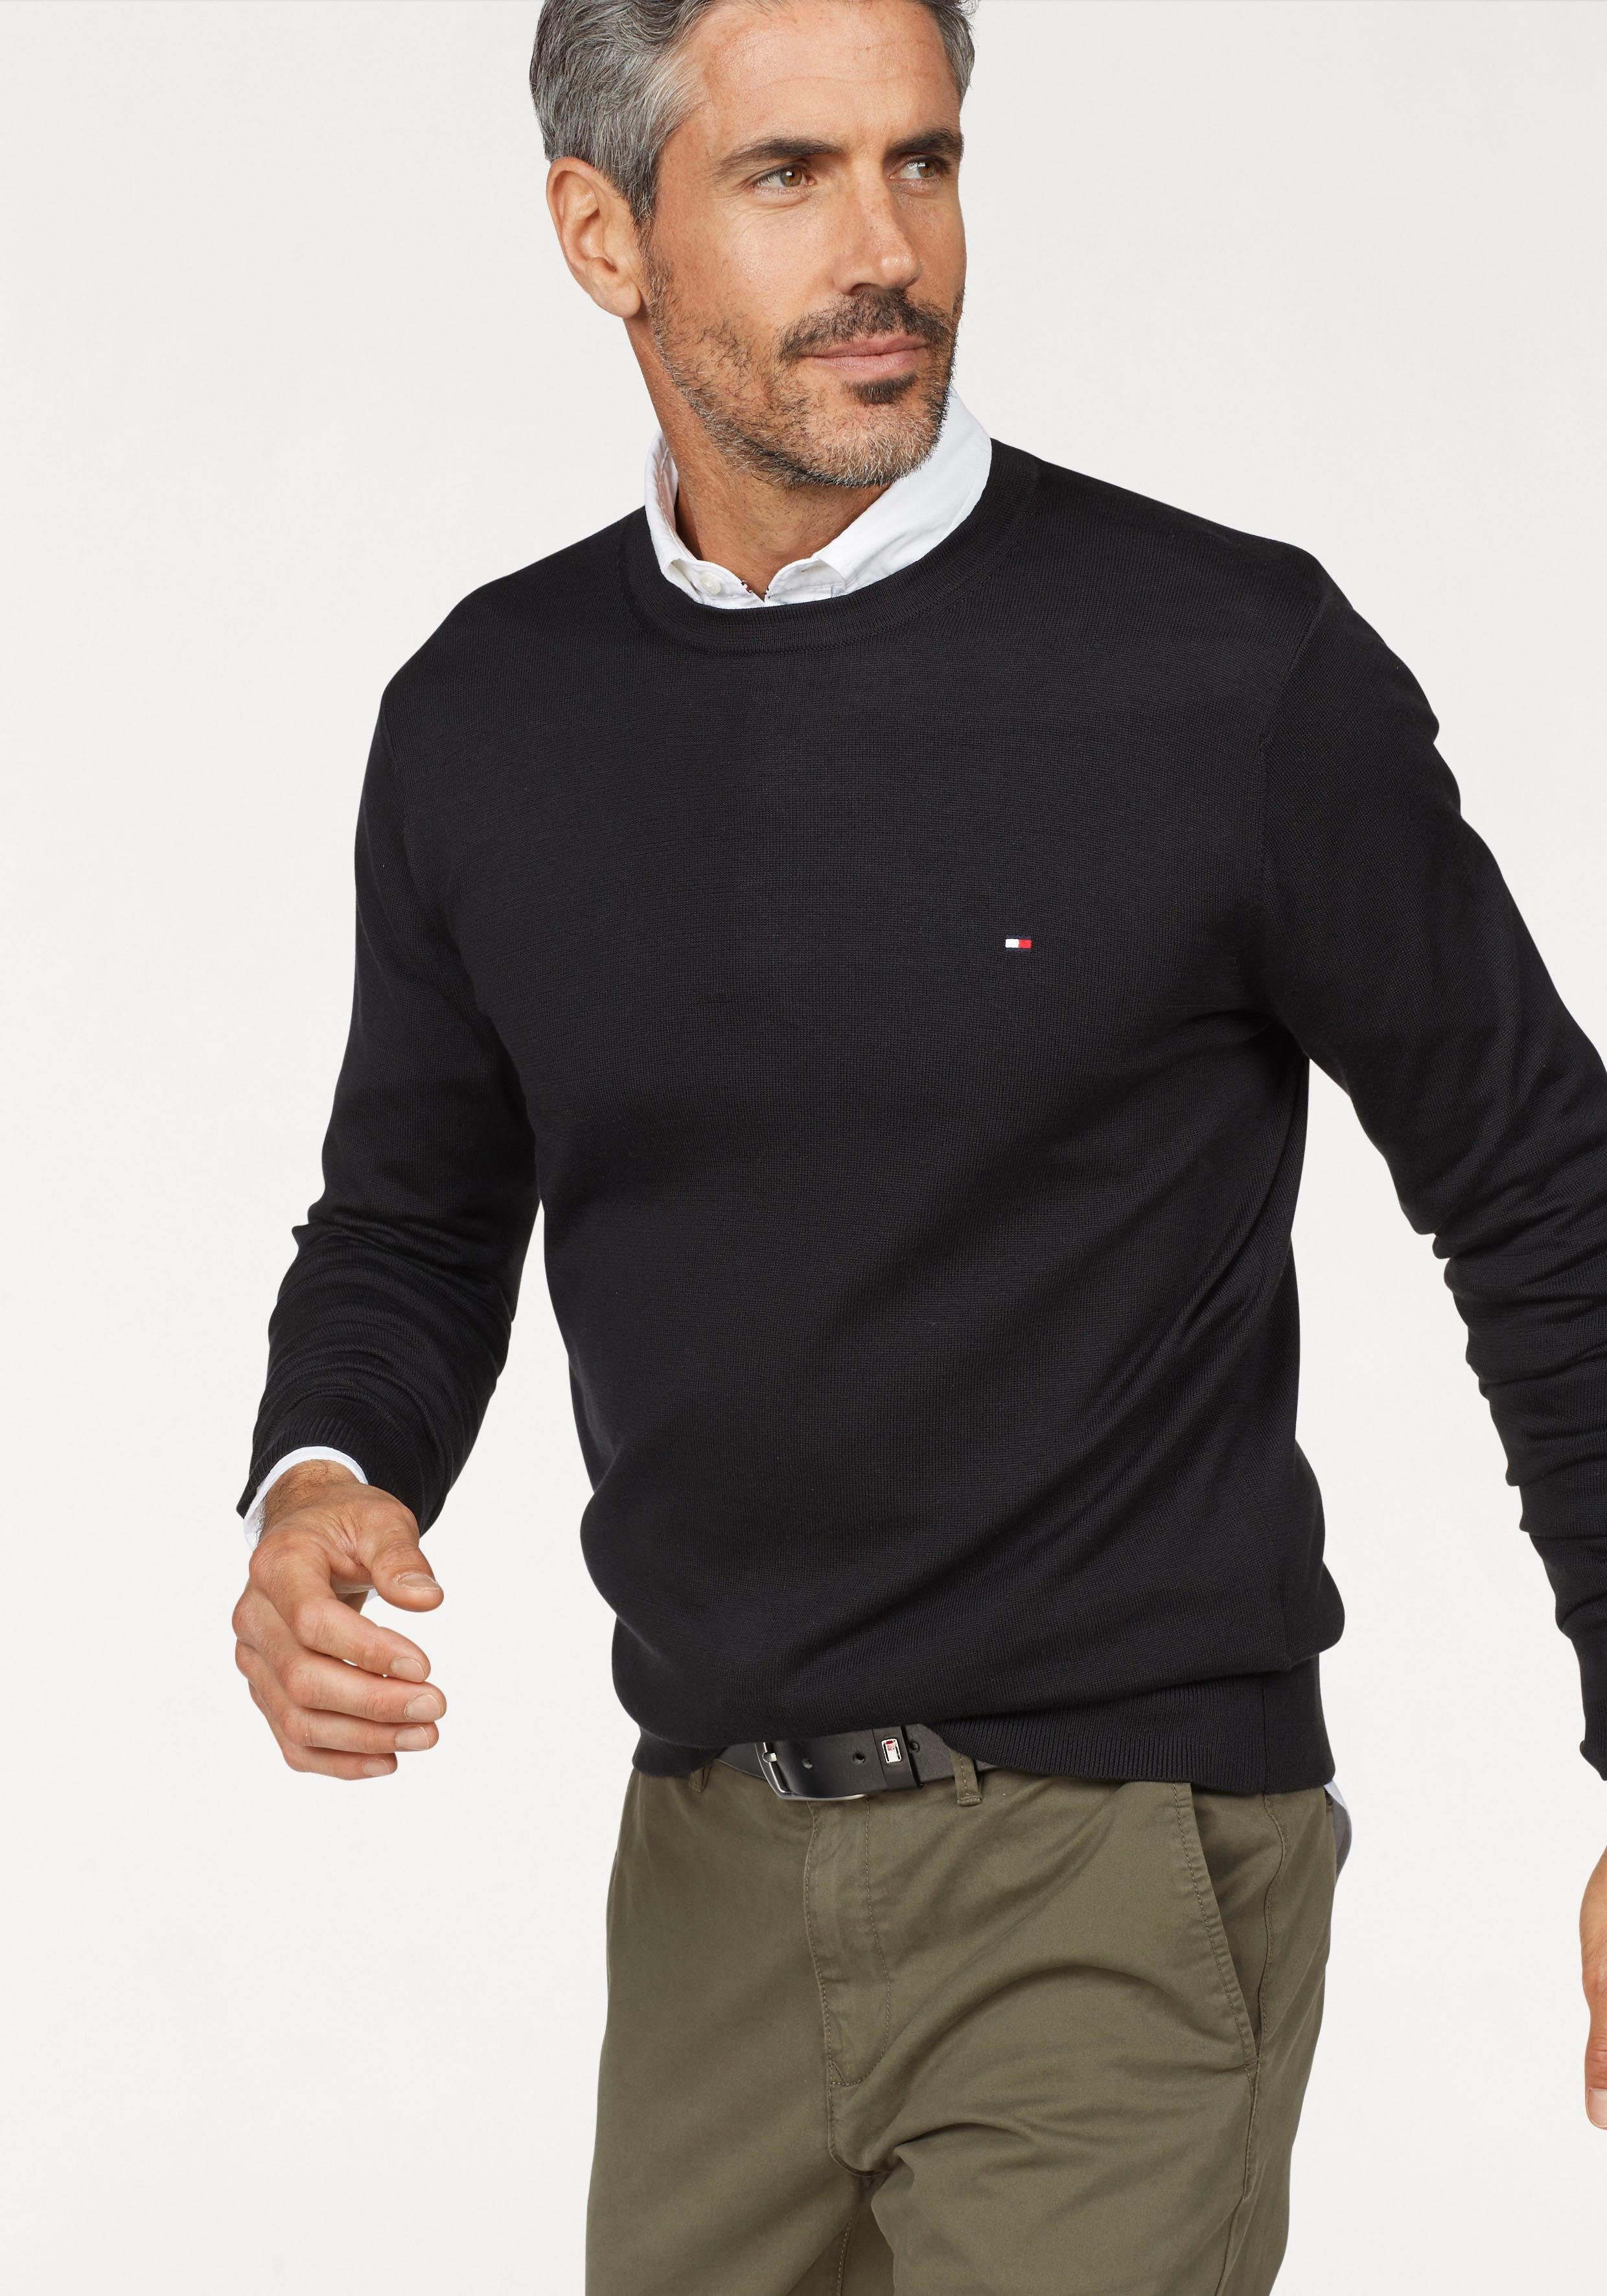 Günstige Tommy Hilfiger Pullover Herren online kaufen | OTTO